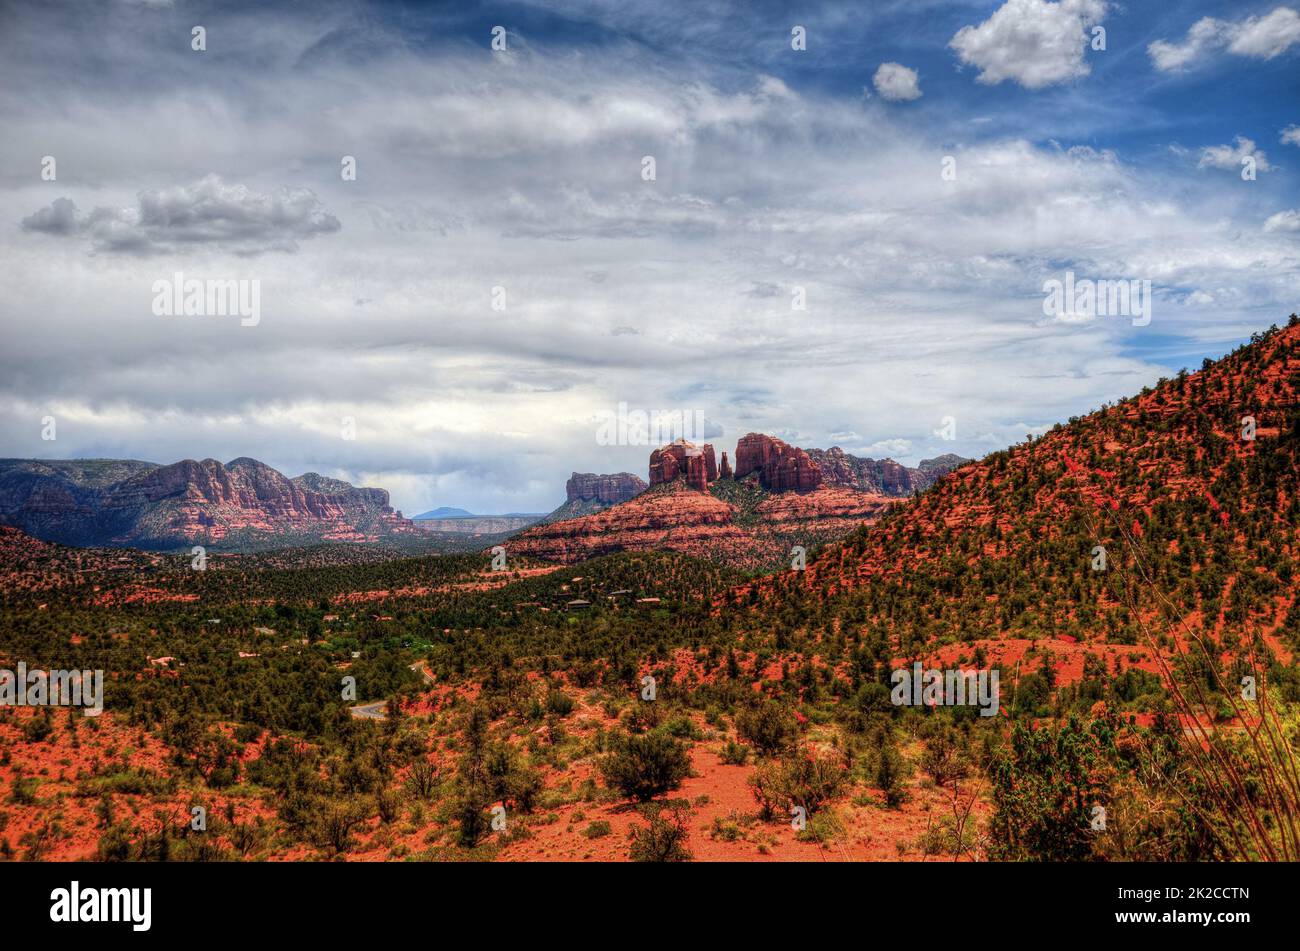 Sedona Arizona Mountains with Cloudy Skies Stock Photo